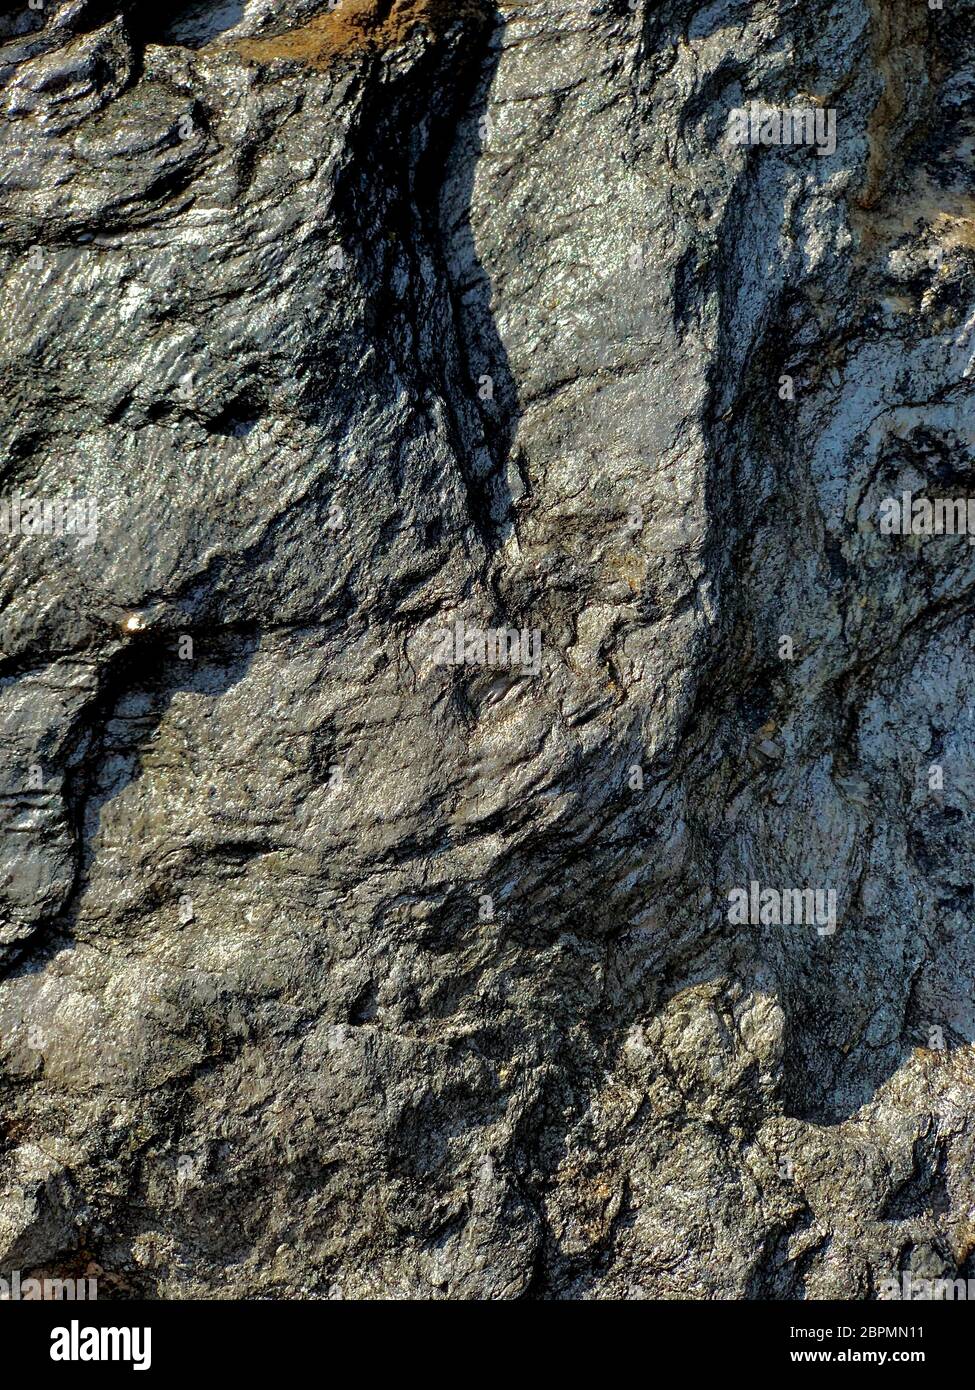 El fondo ondulado de la estructura geológica de la falla de carbón de esquisto superficie de la roca de piedra astillada. Foto de stock